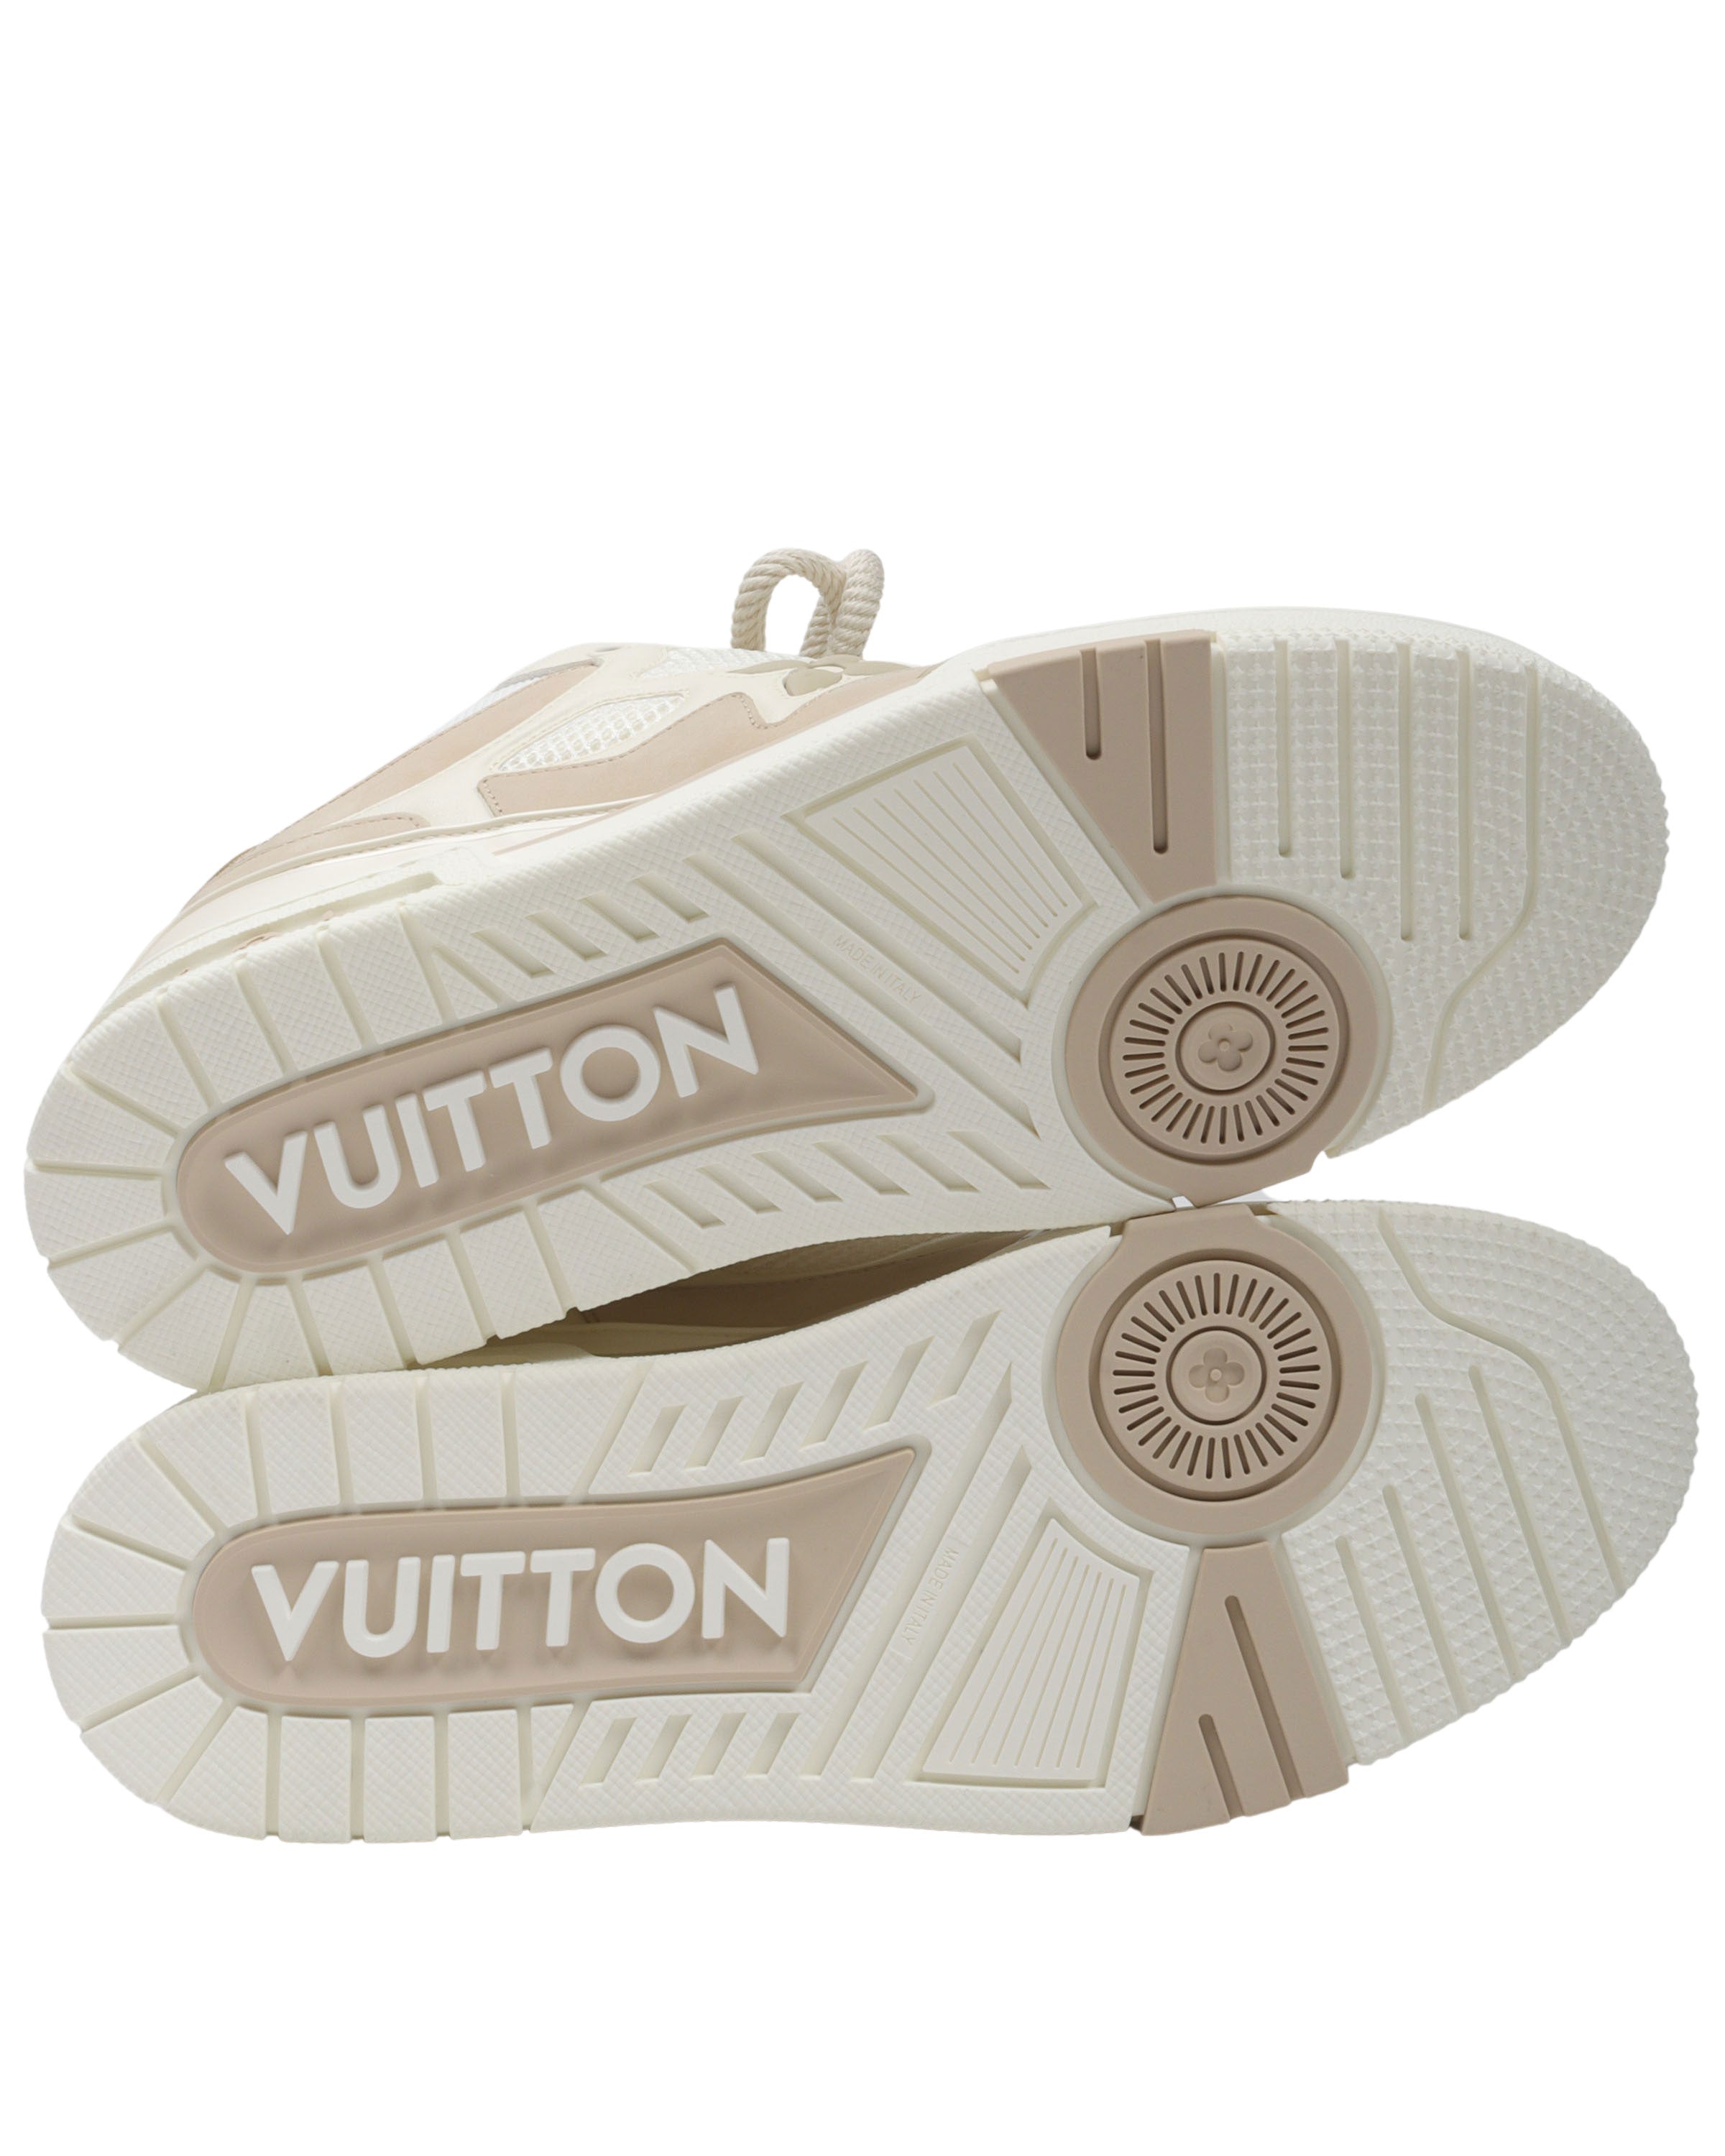 Louis Vuitton LV Skate Sneaker SK8 Beige – The Luxury Shopper